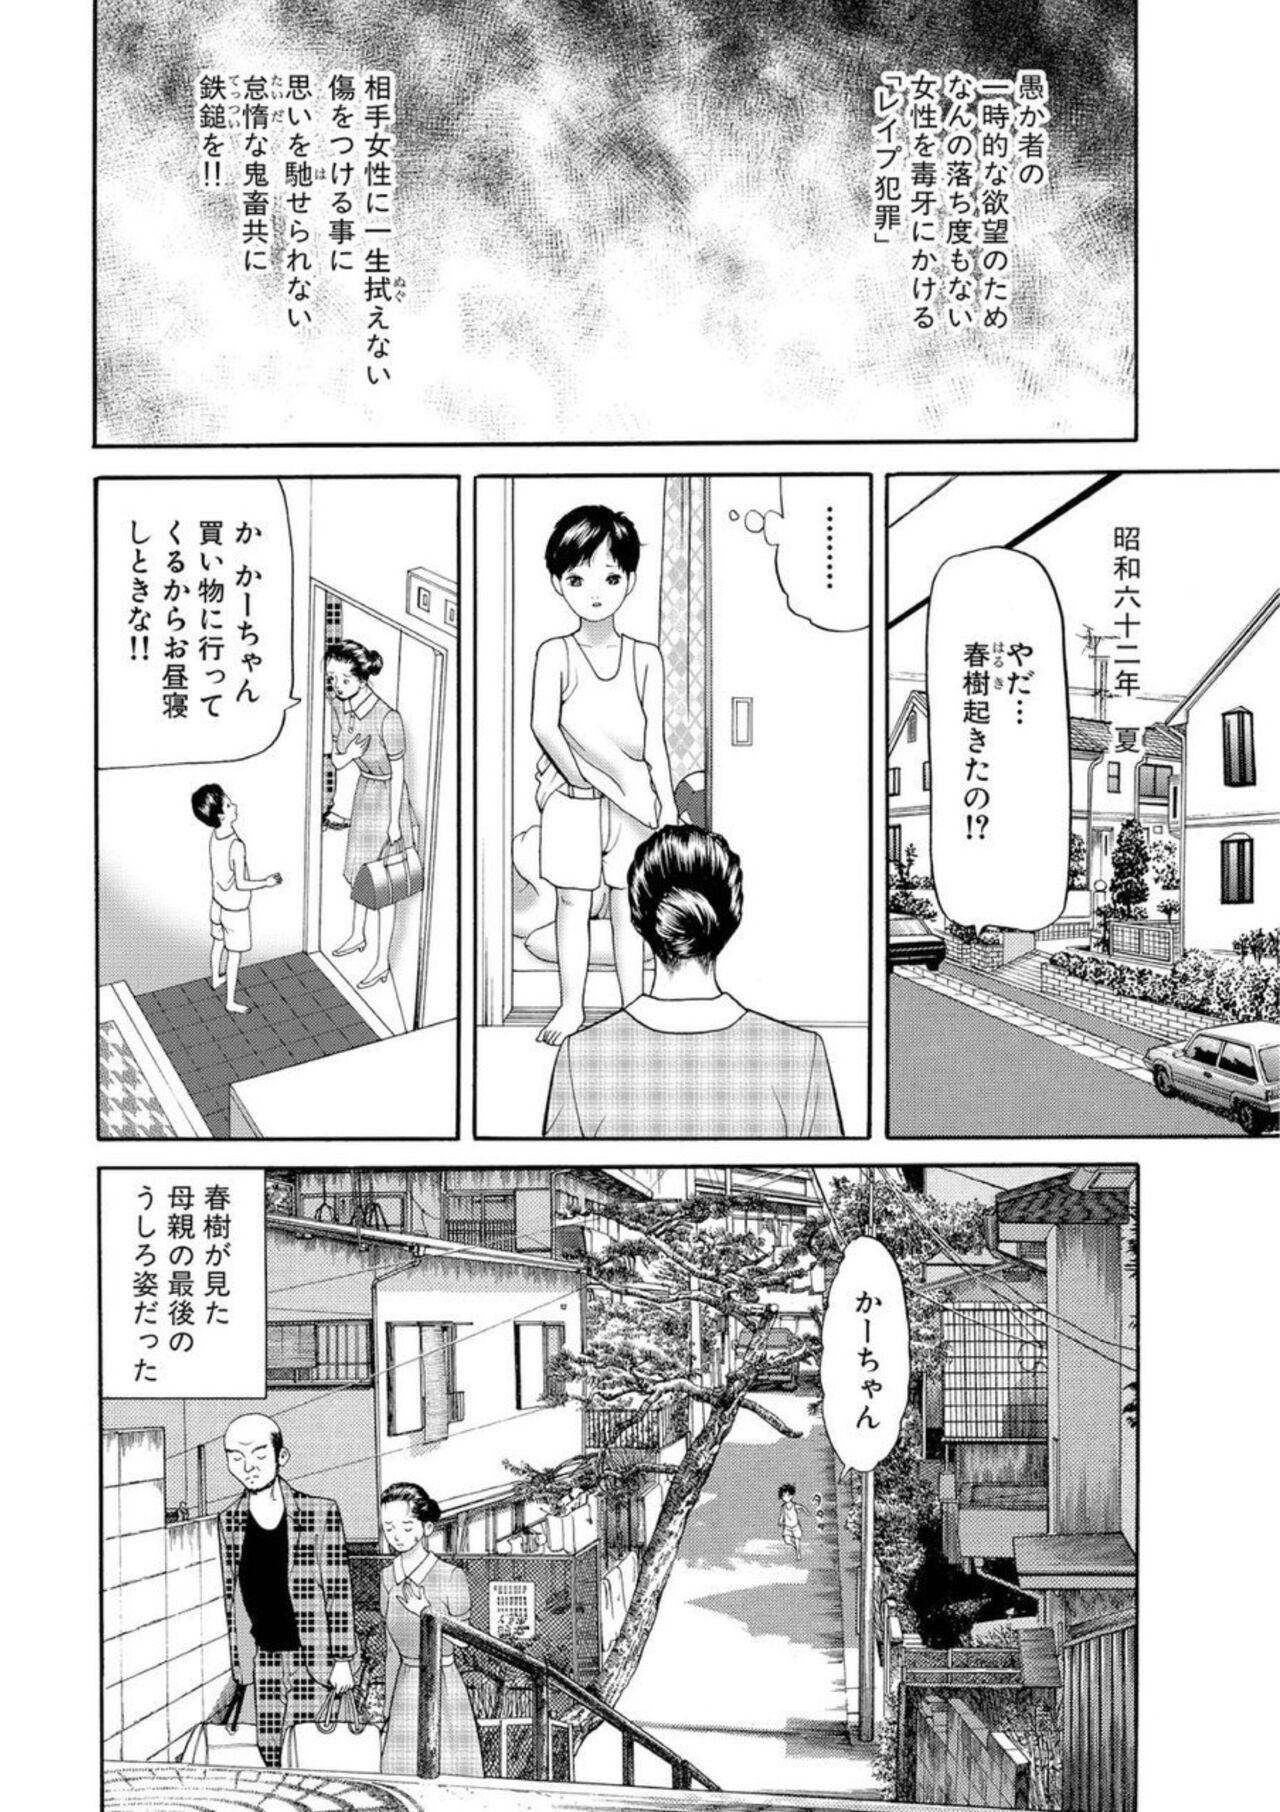 Boy Nyobon Jitsuroku Rape Saiban 1 Cheating - Page 3